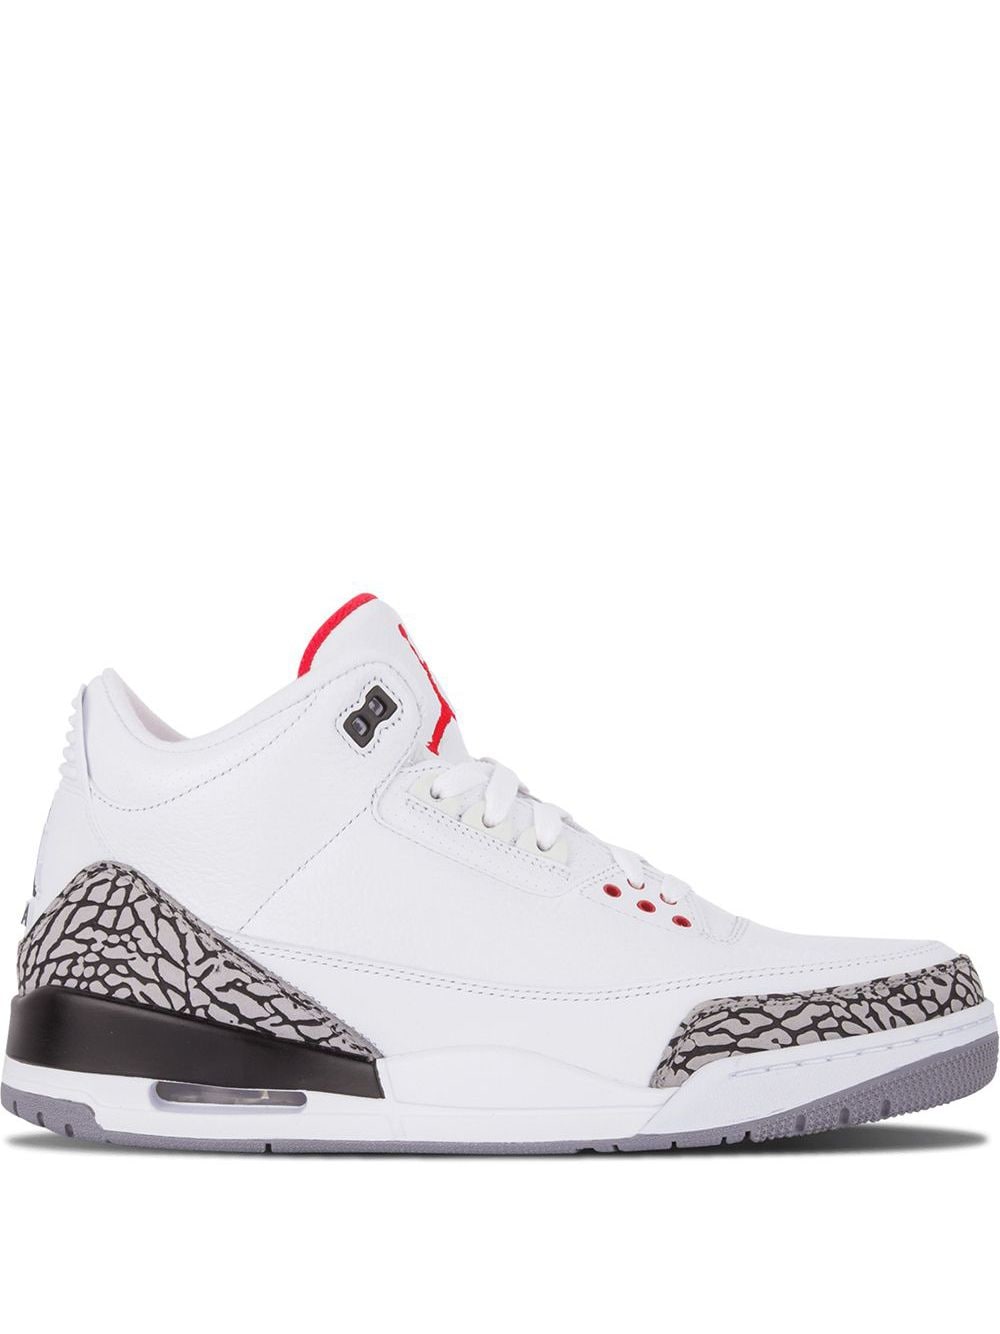 Jordan Air Jordan 3 Retro "White/Cement" sneakers